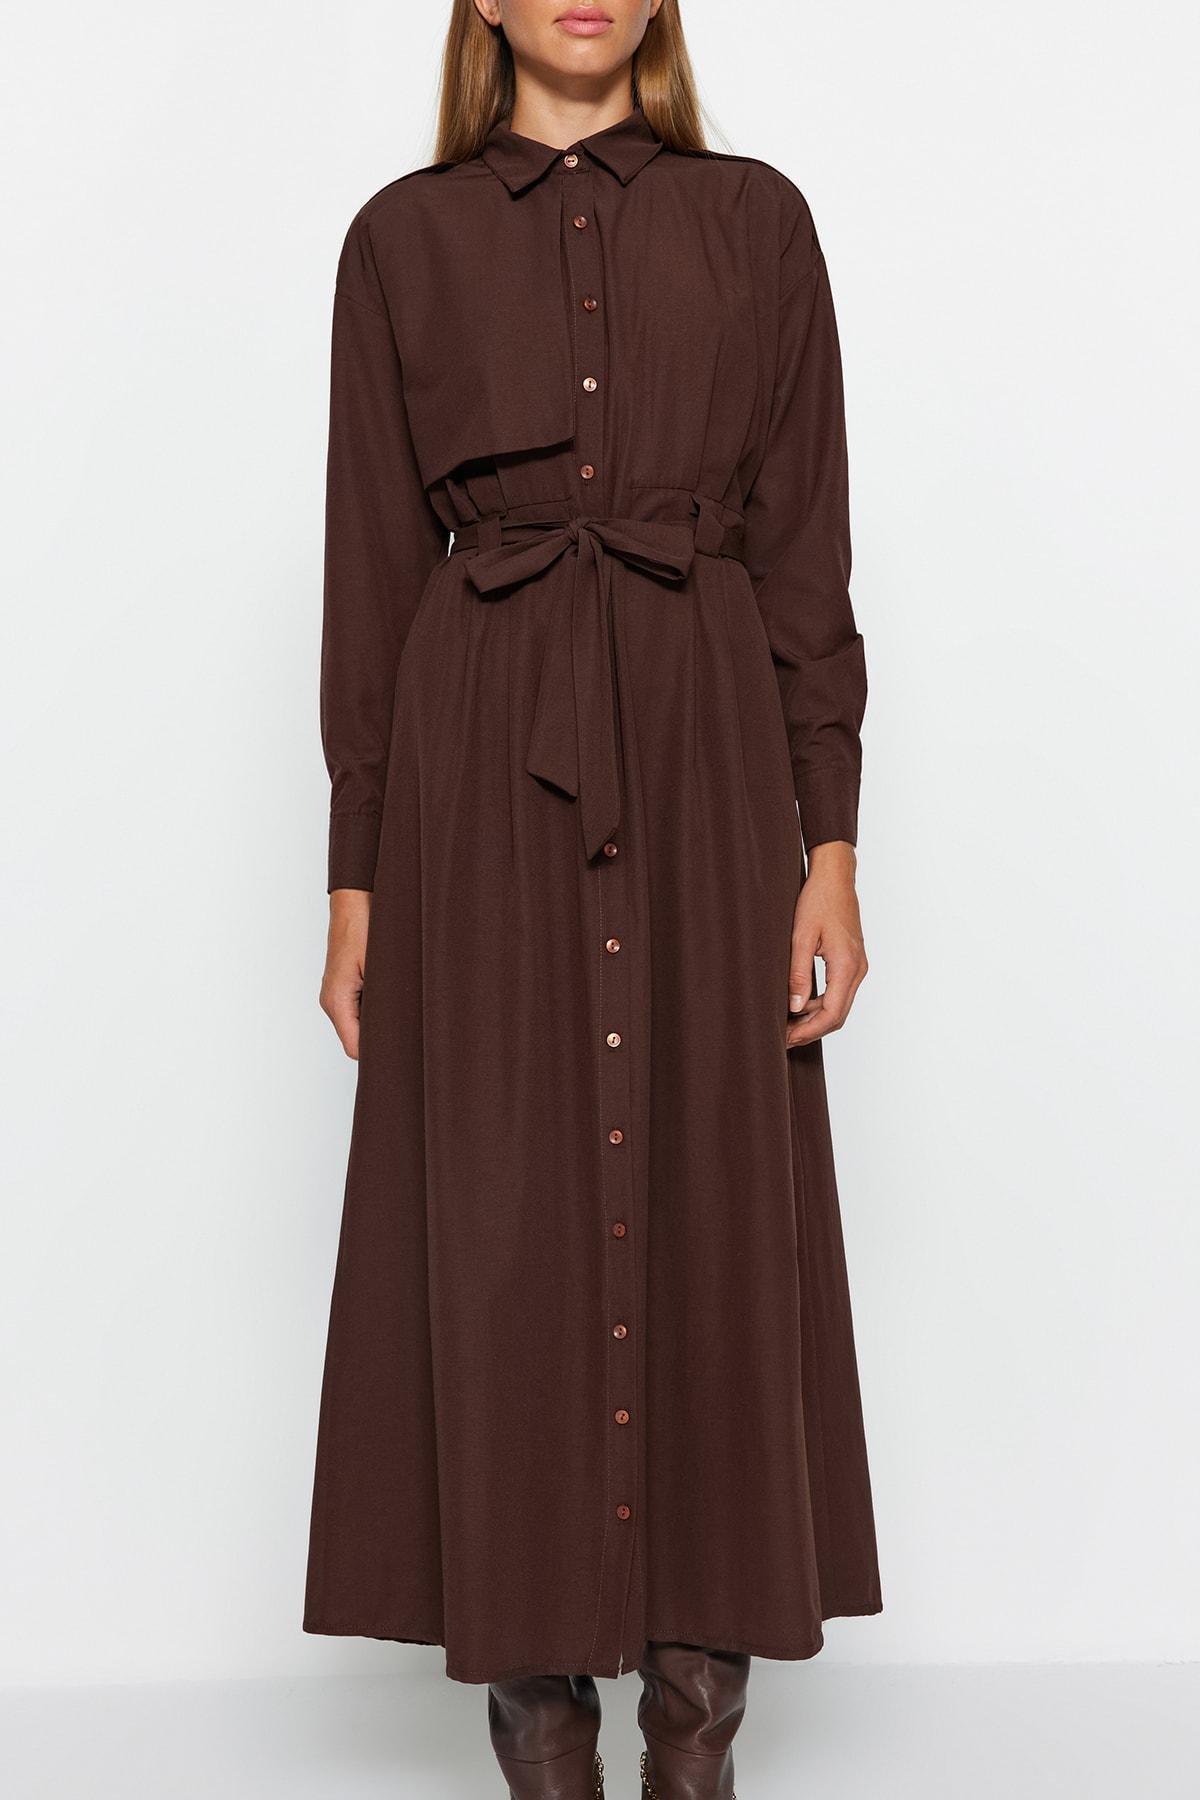 Trendyol - Brown Belted Aller Patterned Woven Dress